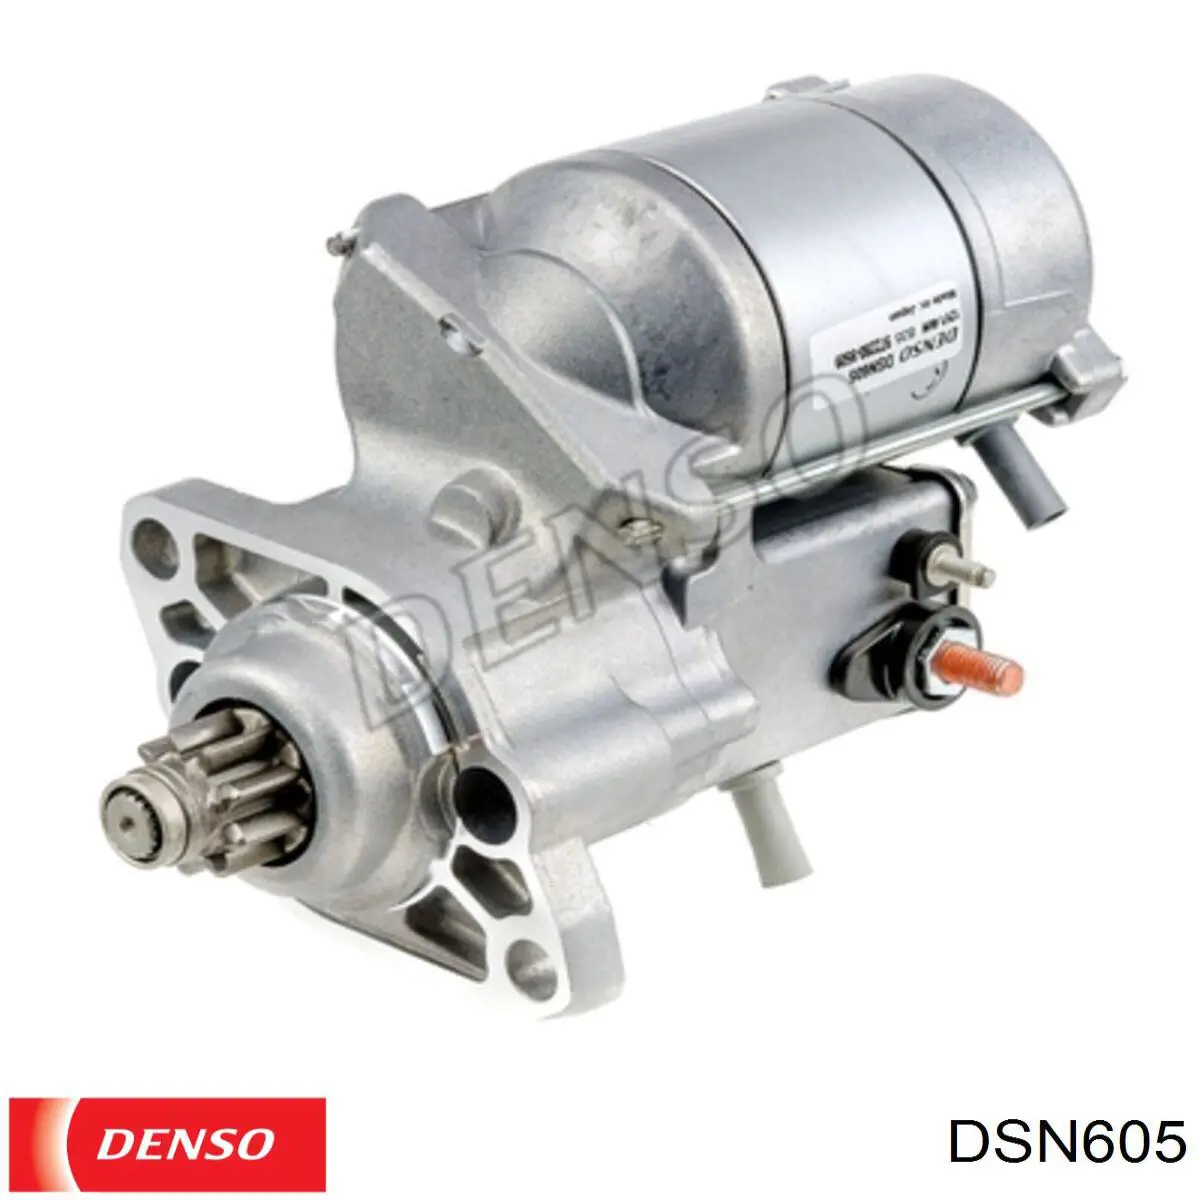 Motor de arranque DSN605 Denso